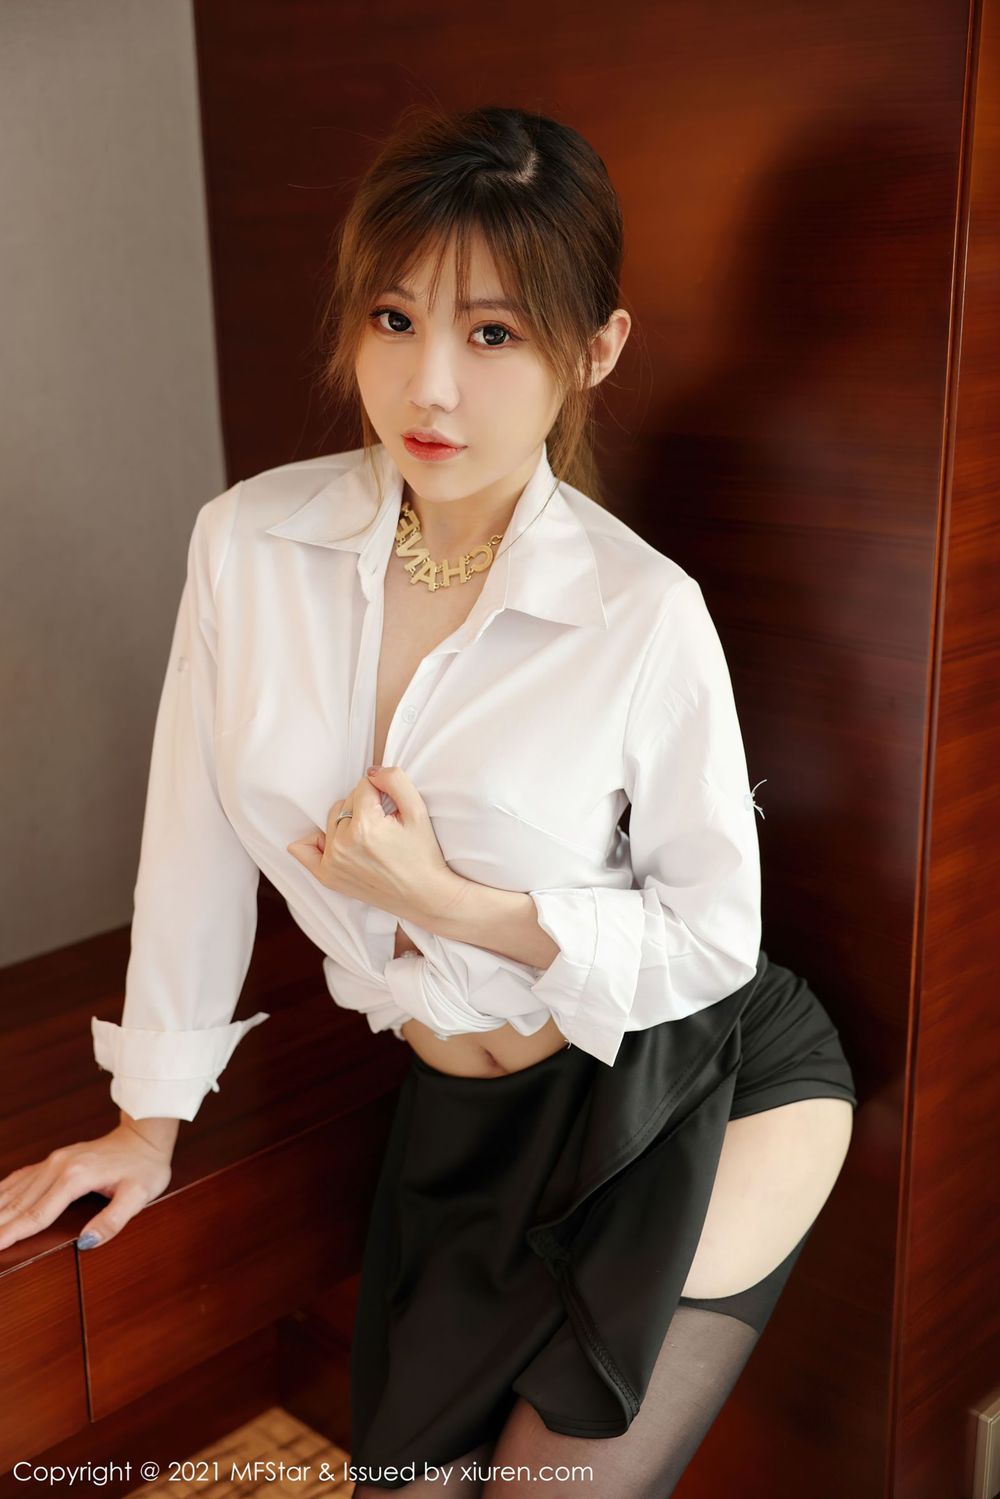 新人模特李颖煊baby - 白衬衫+黑丝系列写真